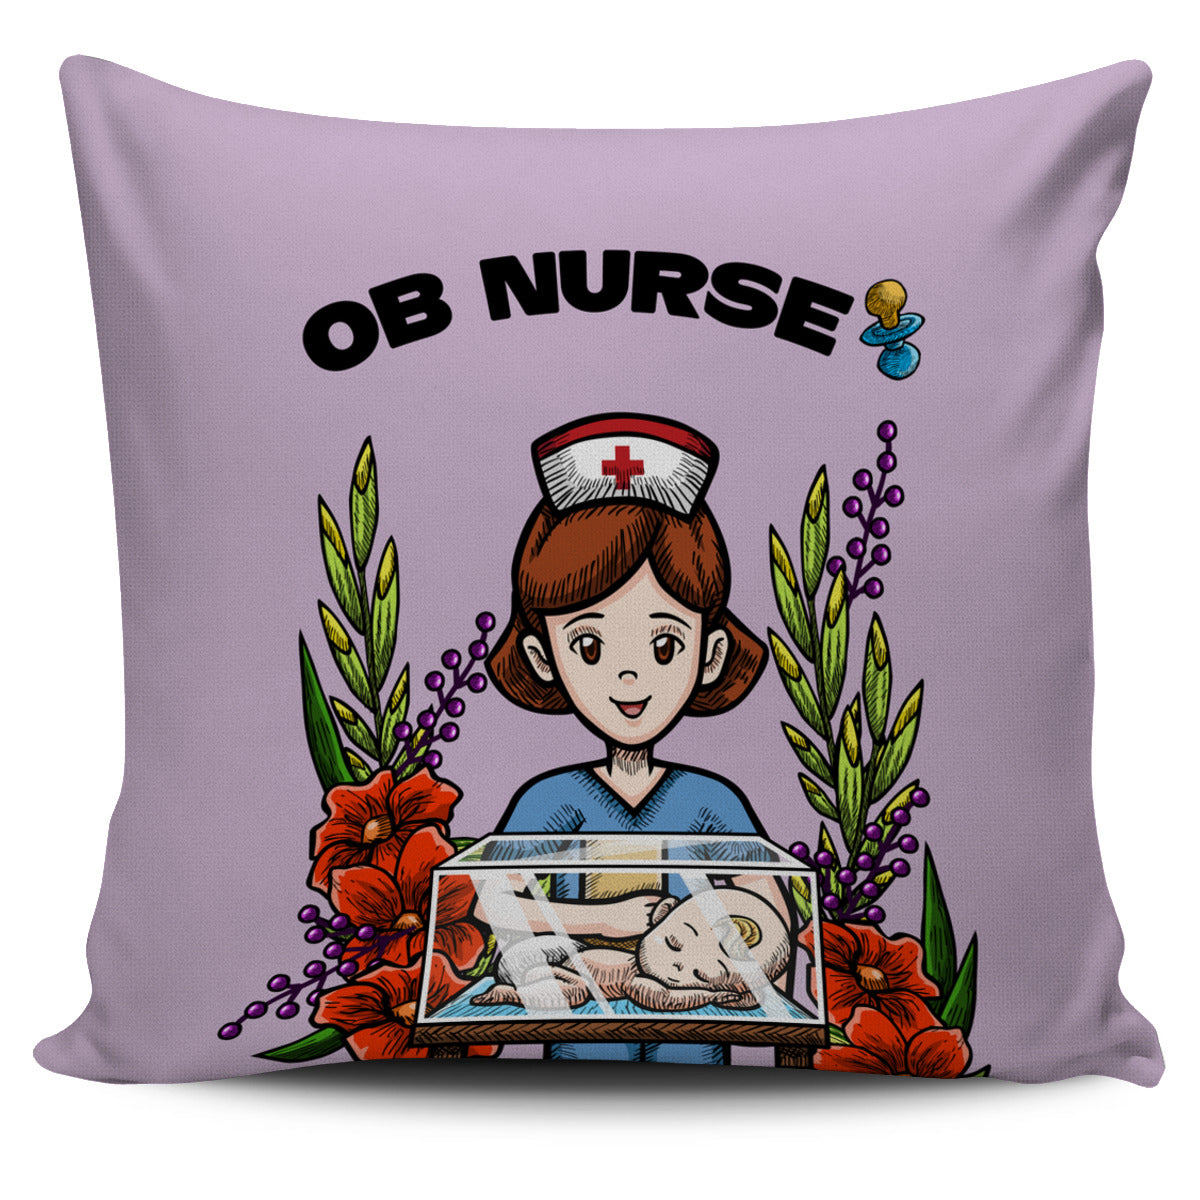 OB Nurse Pillow Cover